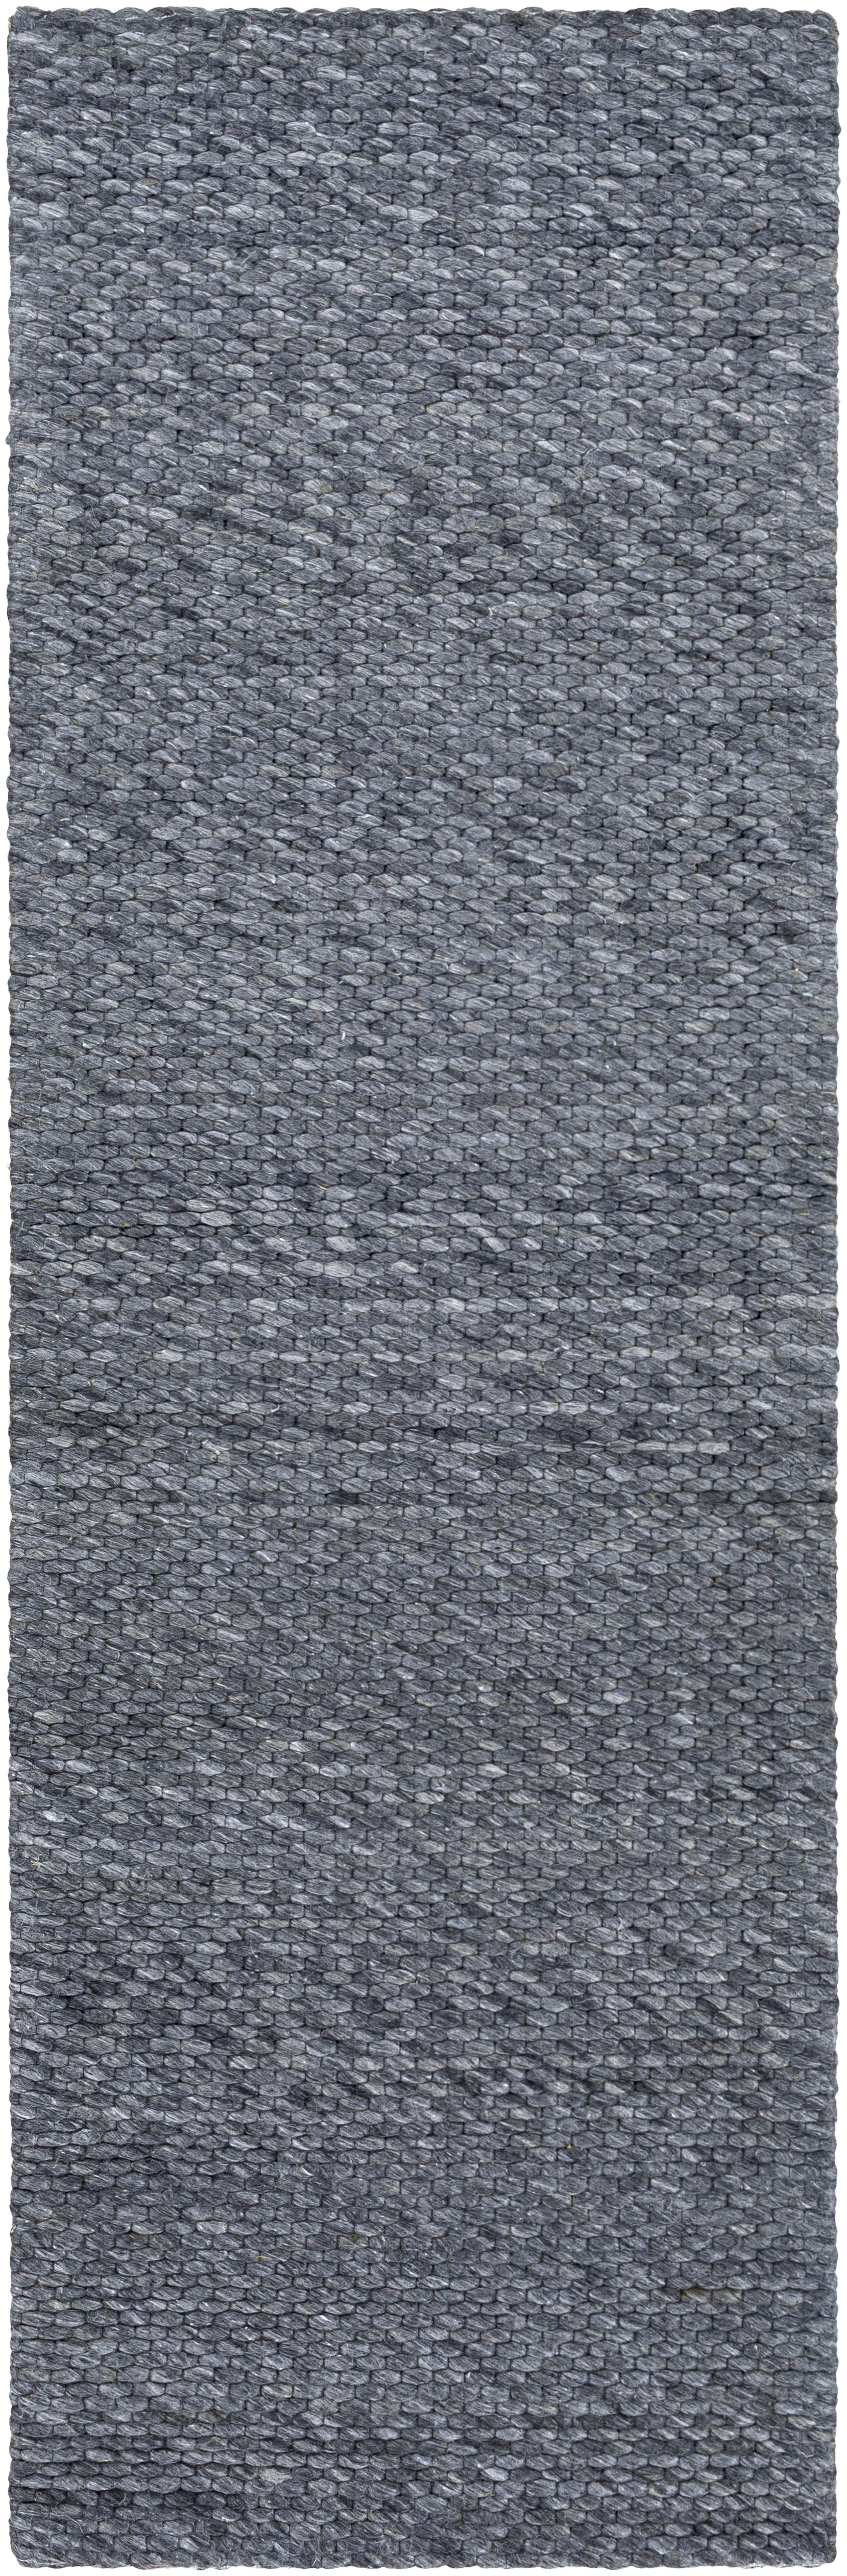 Surya Colarado Cdo-2306 Medium Gray, Charcoal Area Rug